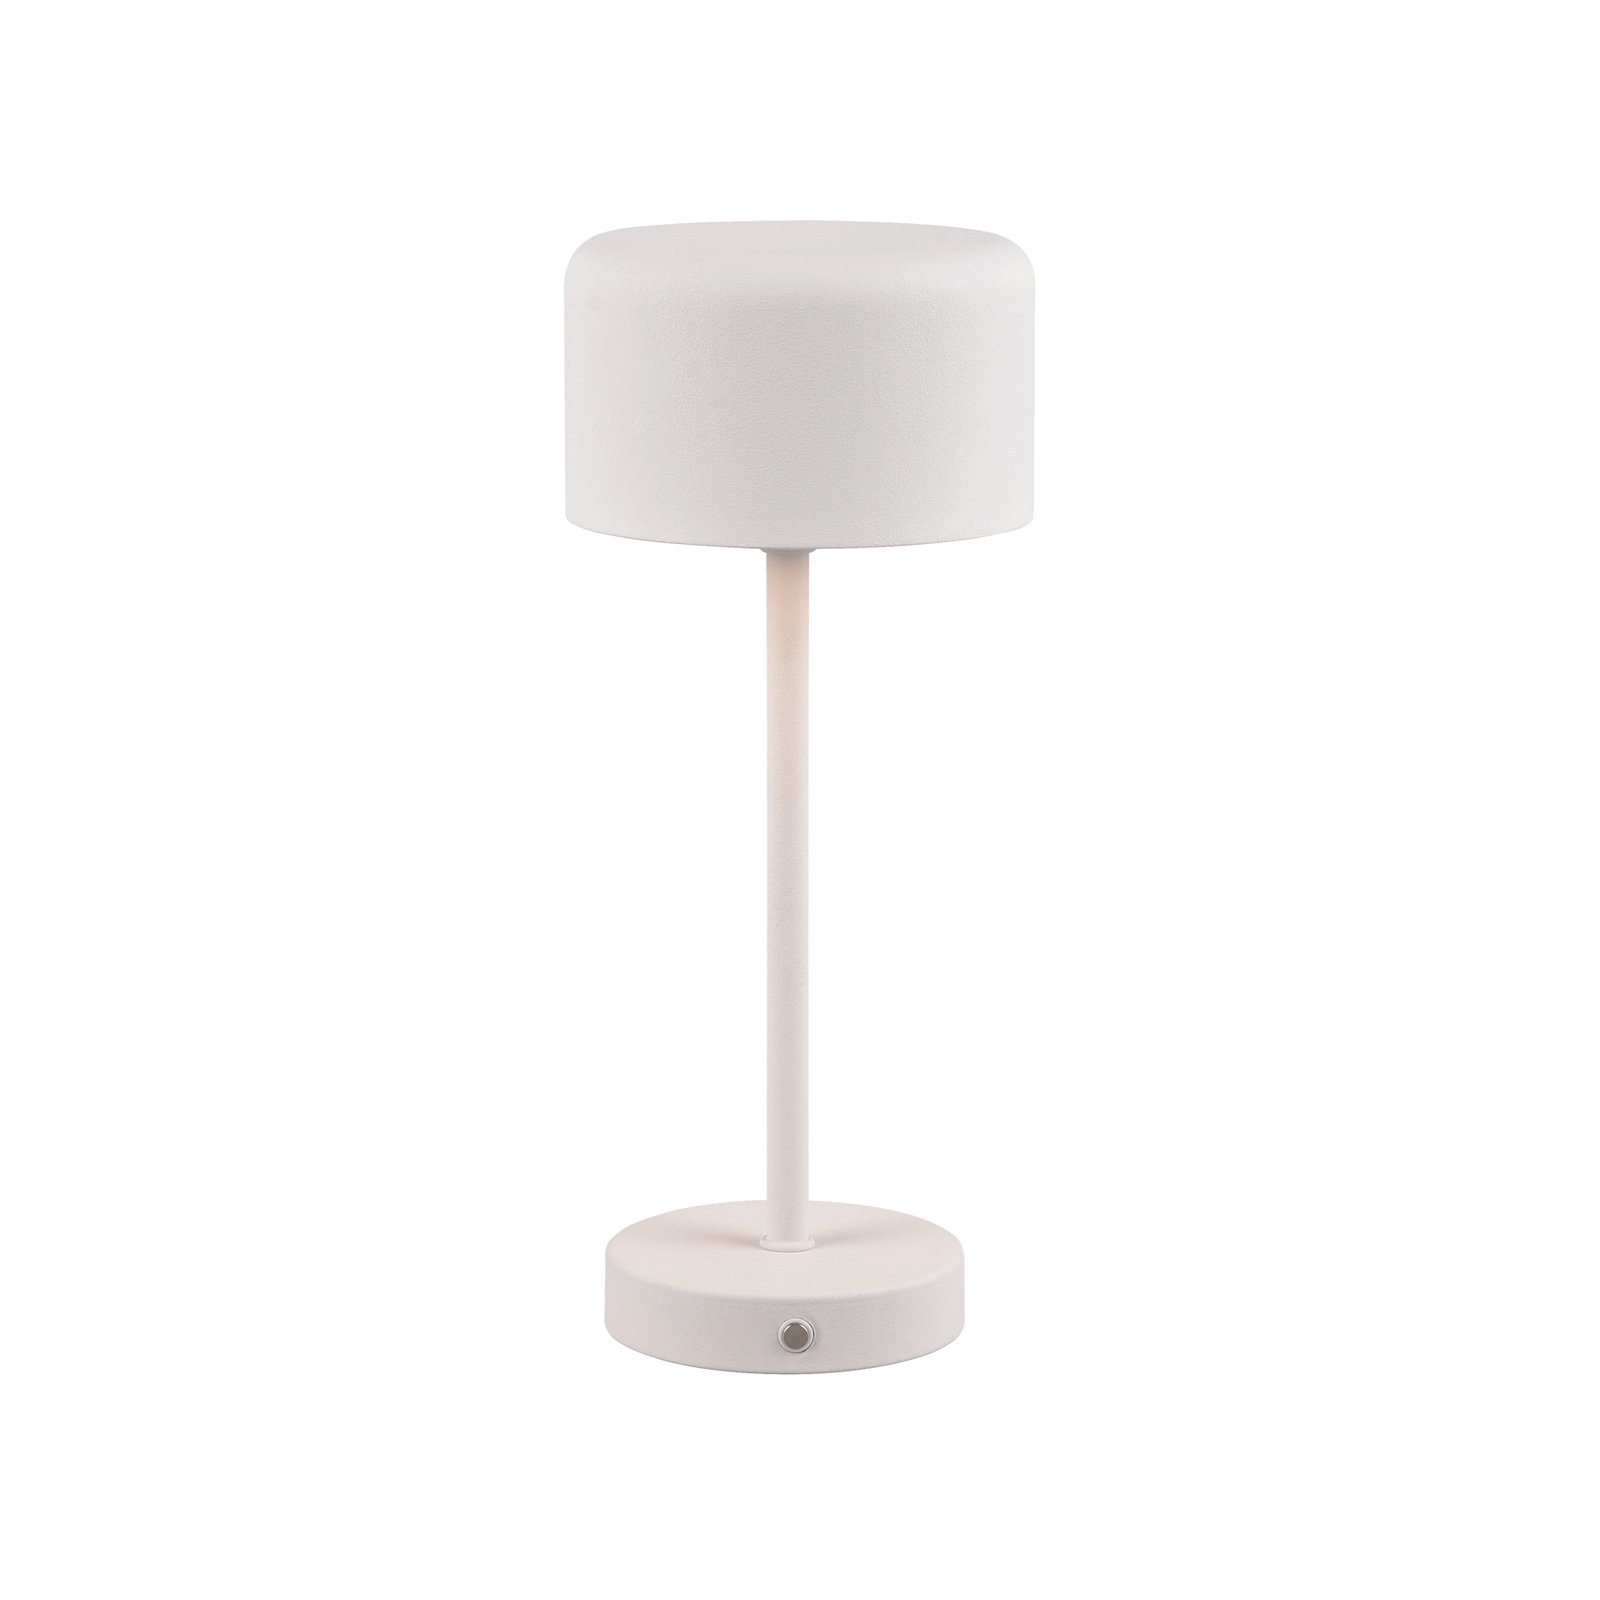 Nabíjecí stolní lampa Jeff LED, matně bílá, výška 30 cm, kovová